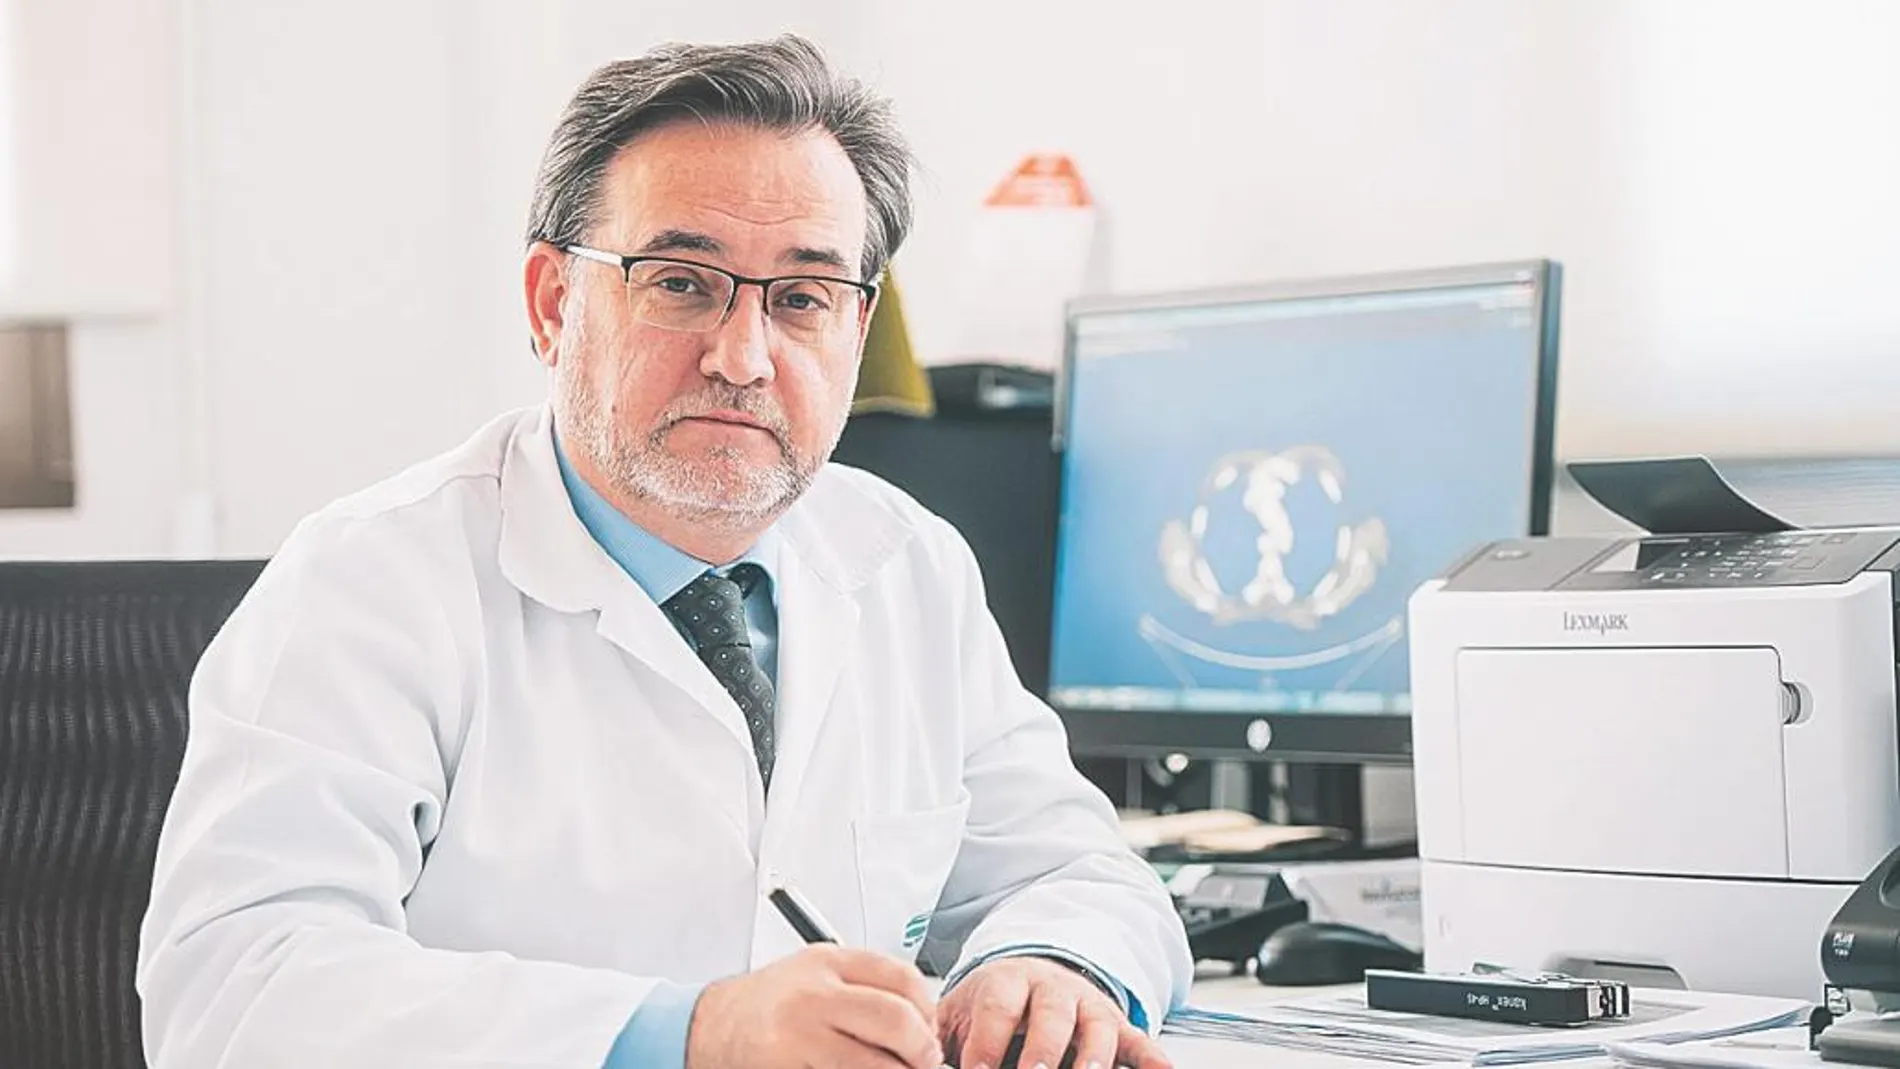 Juan Carlos Peñalver/ Jefe del Servicio de Cirugía Torácica de la Fundación IVO (Instituto Valenciano de Oncología)